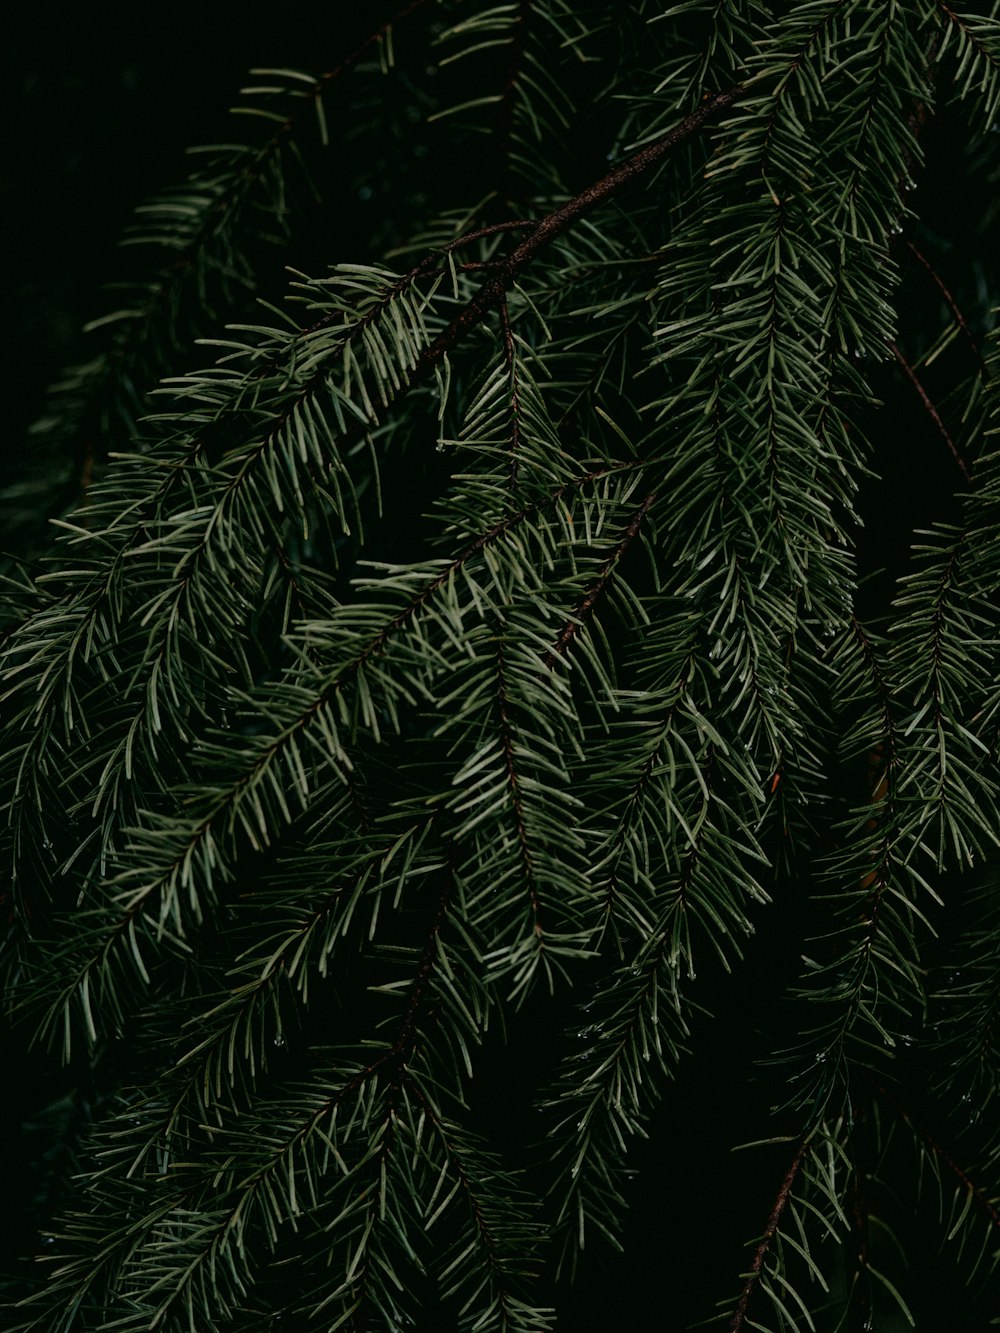 pino verde con guirnaldas de luces rojas